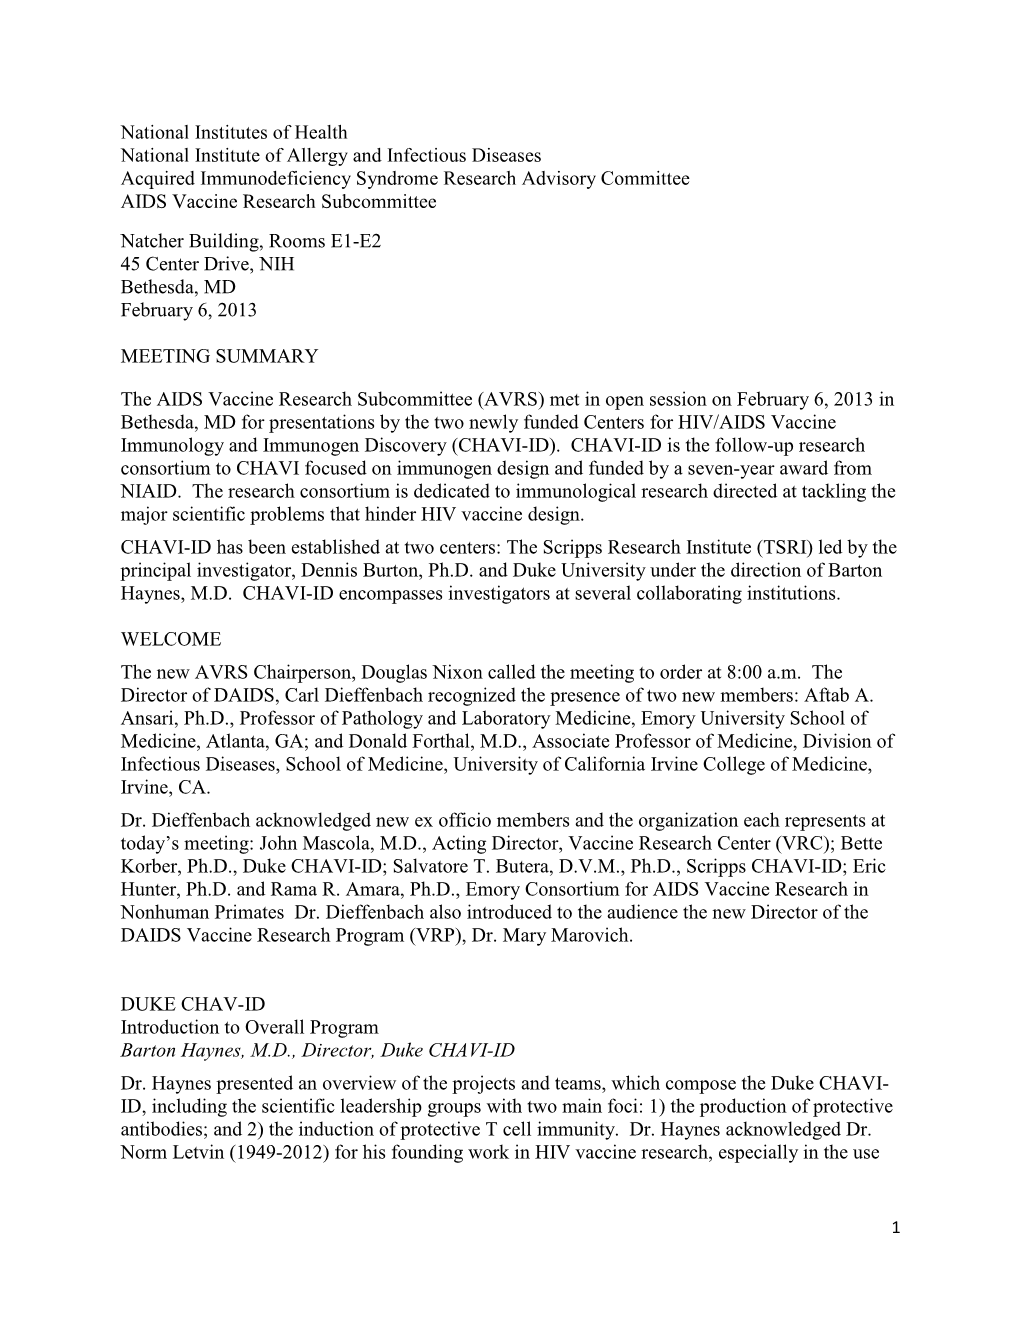 AVRS Meeting Summary, February 6, 2013